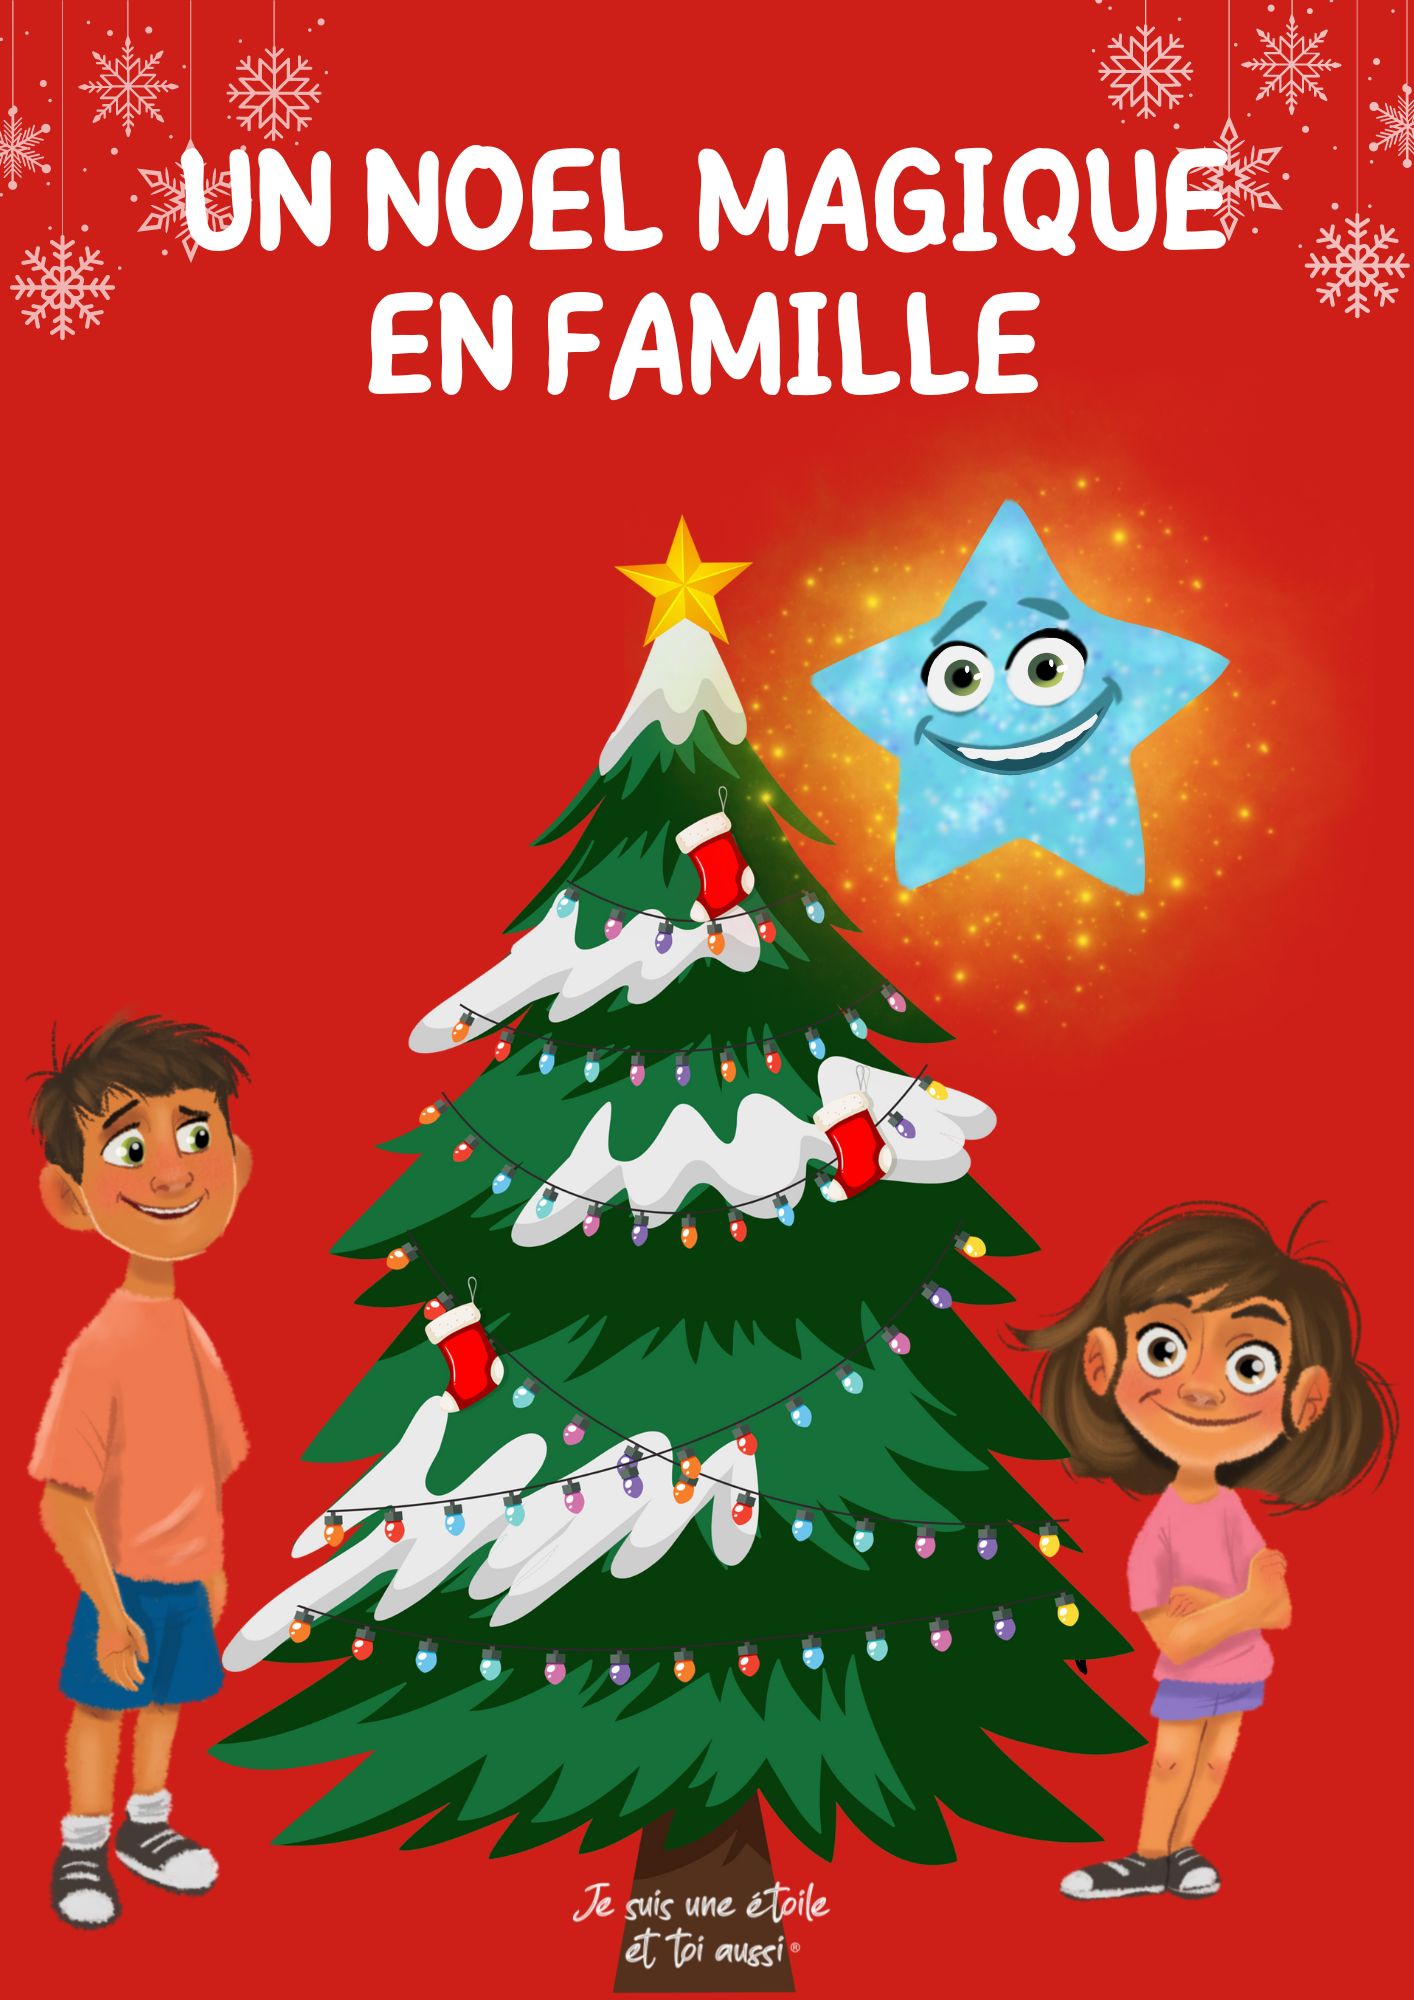 Le livre de noel pour enfant: Découvre la magie de Noël en famille